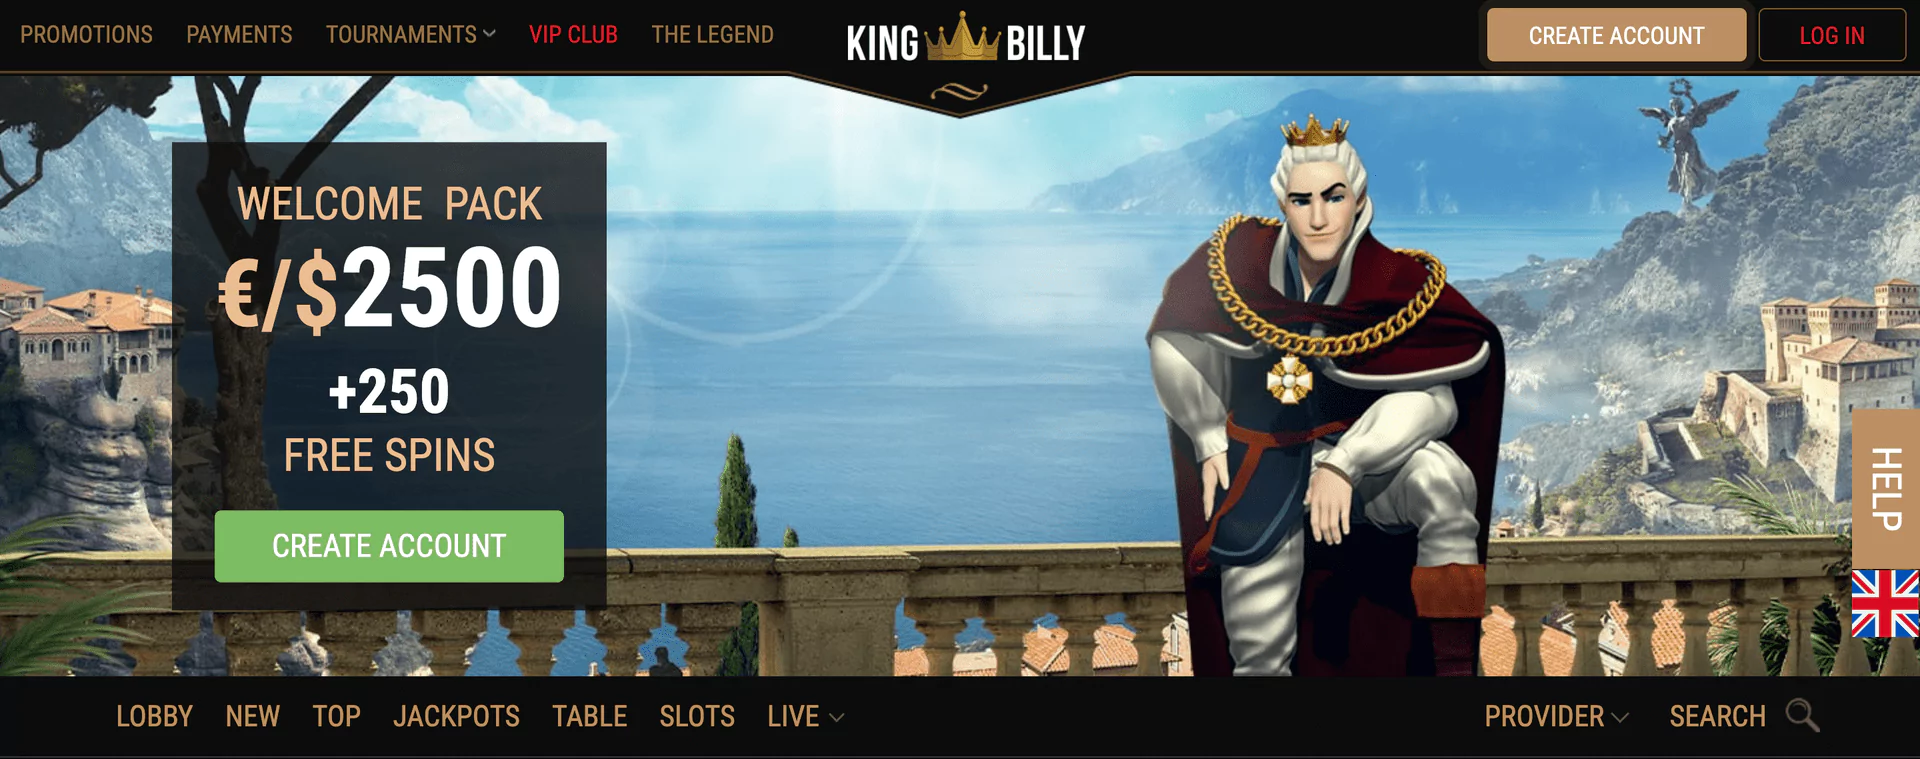 Main page at King Billy